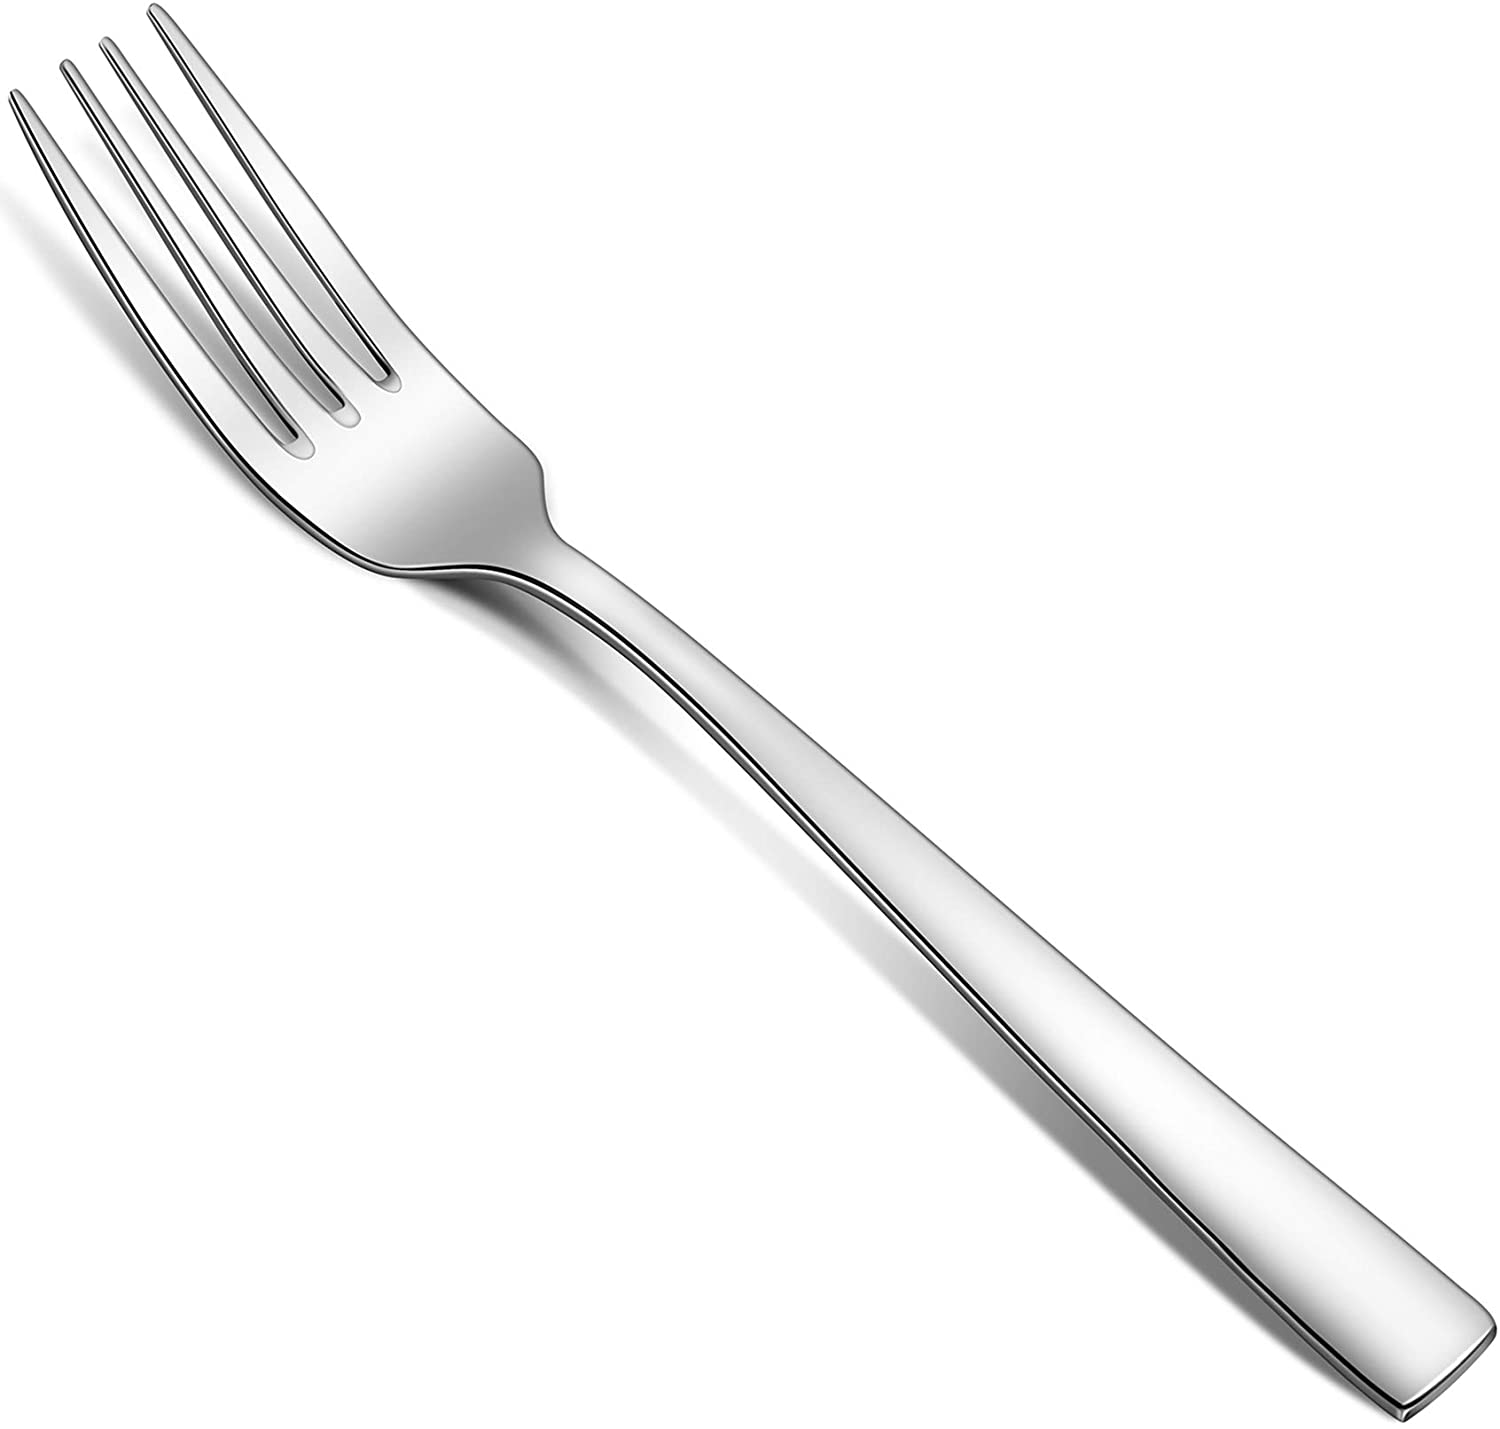 Image Of A Fork - KibrisPDR